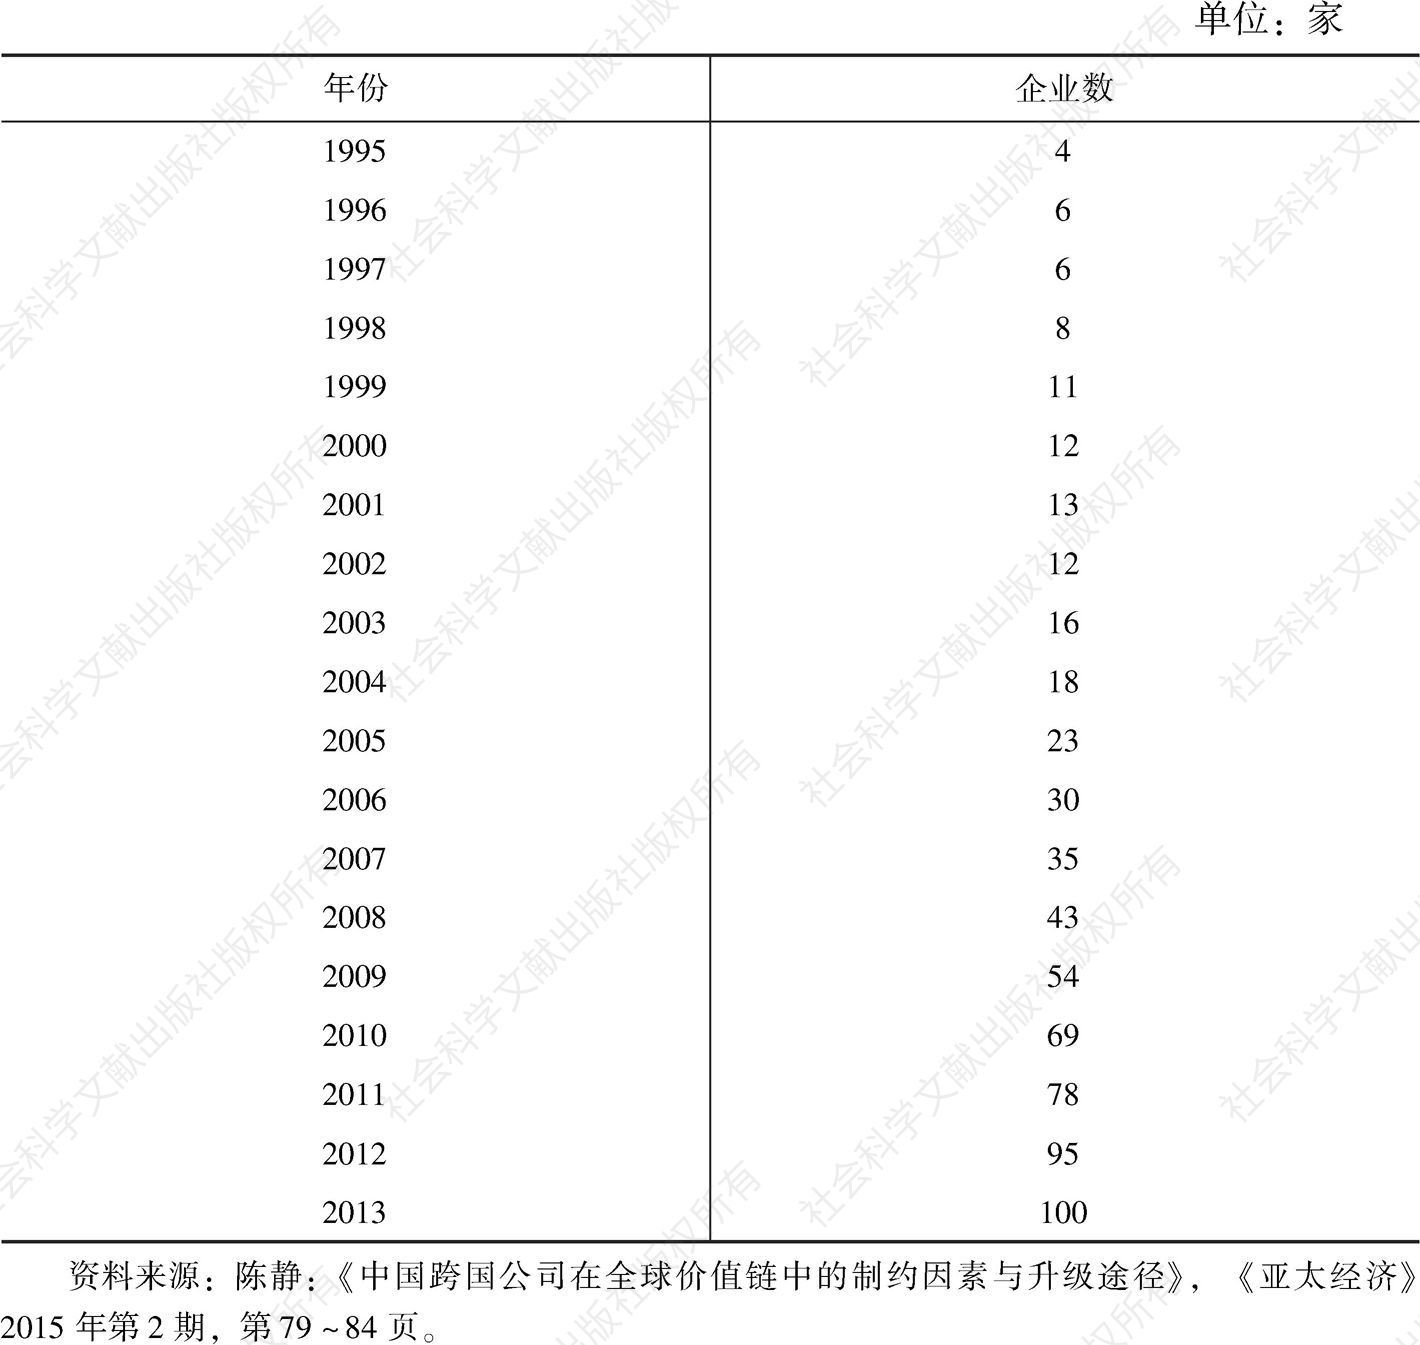 表1-3 1995年以来中国进入世界《财富》500强的企业数